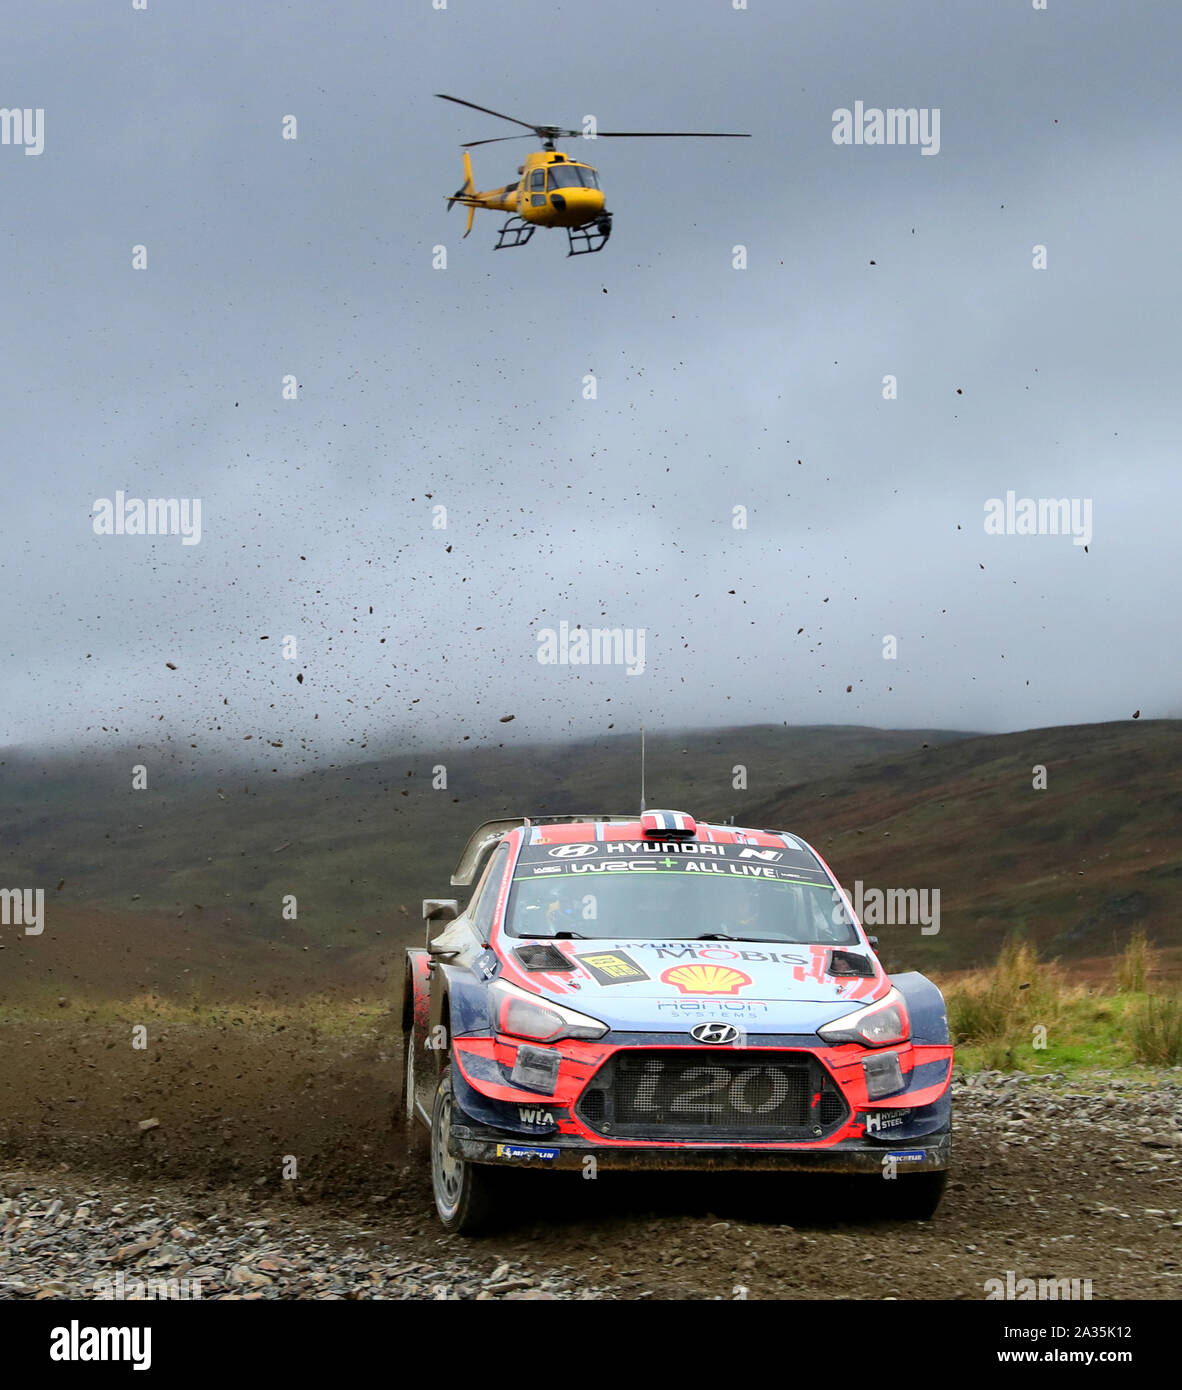 La Norvège Andreas Mikkelsen et Anders Jaeger dans la Hyundai i20 WRC coupé au cours de la troisième journée du Wales Rally GB. Banque D'Images